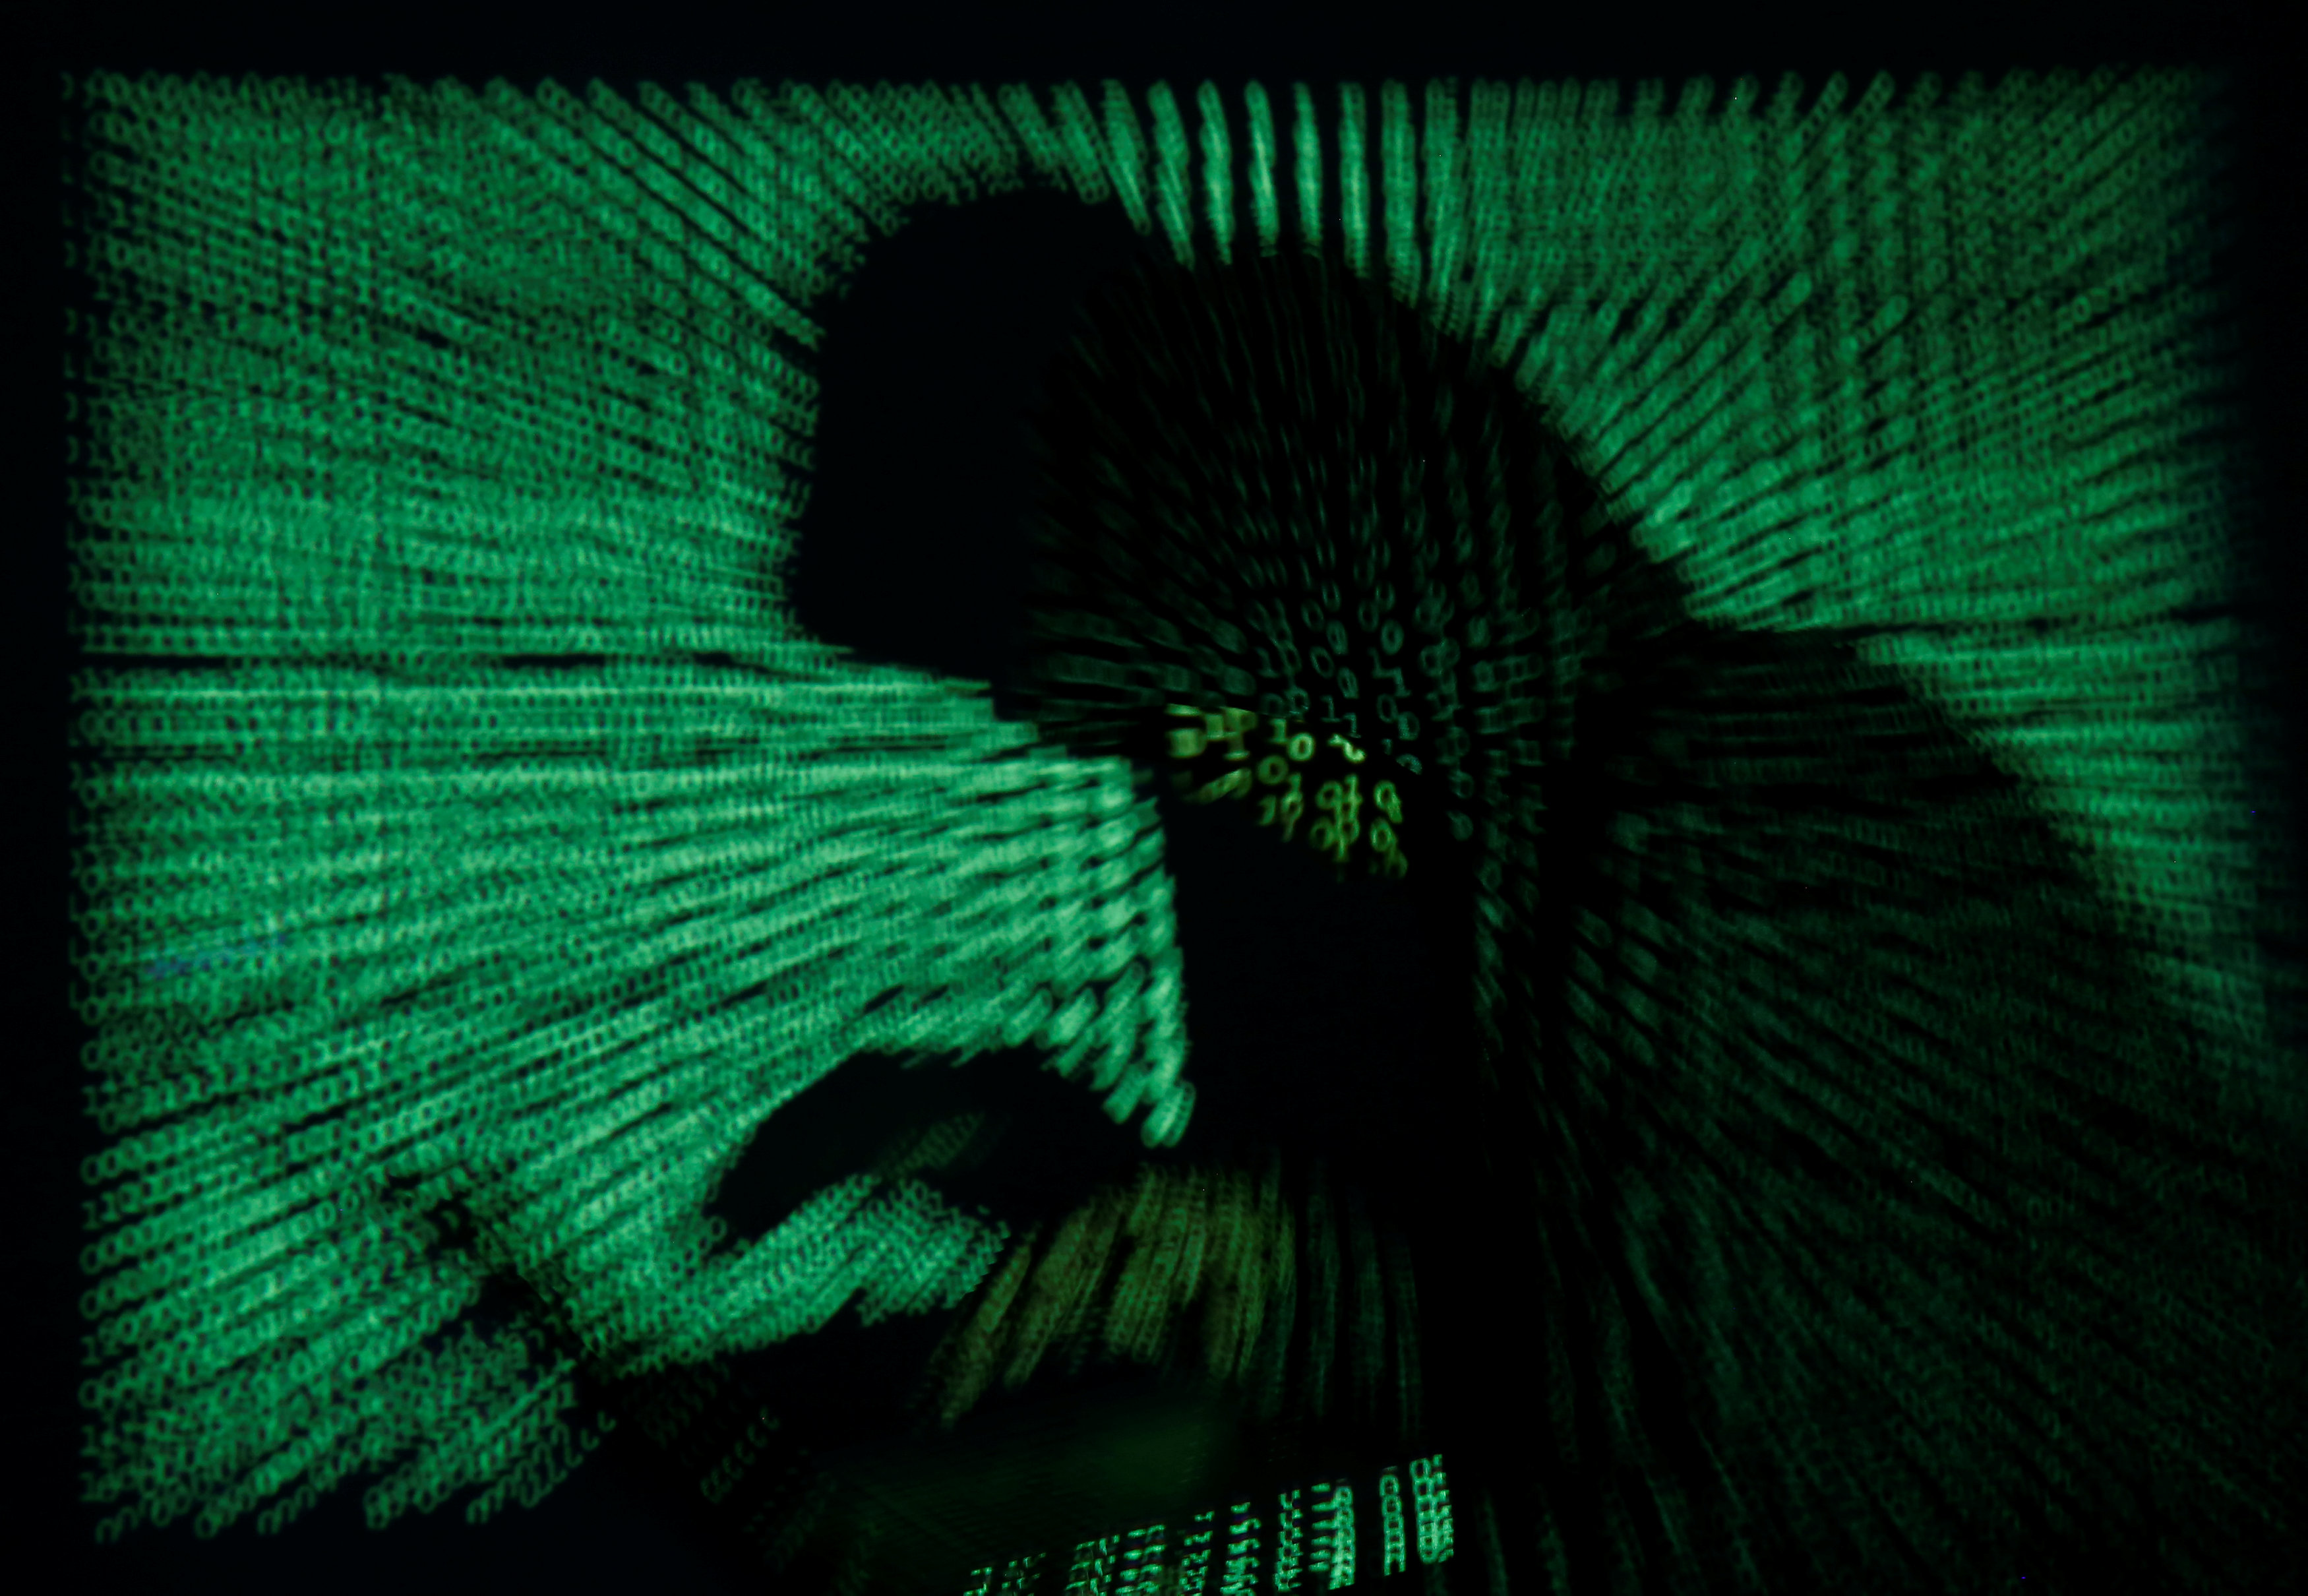 Ρωσική τράπεζα σε συνεργασία με Interpol εντόπισαν χάκερς στην Κίνα